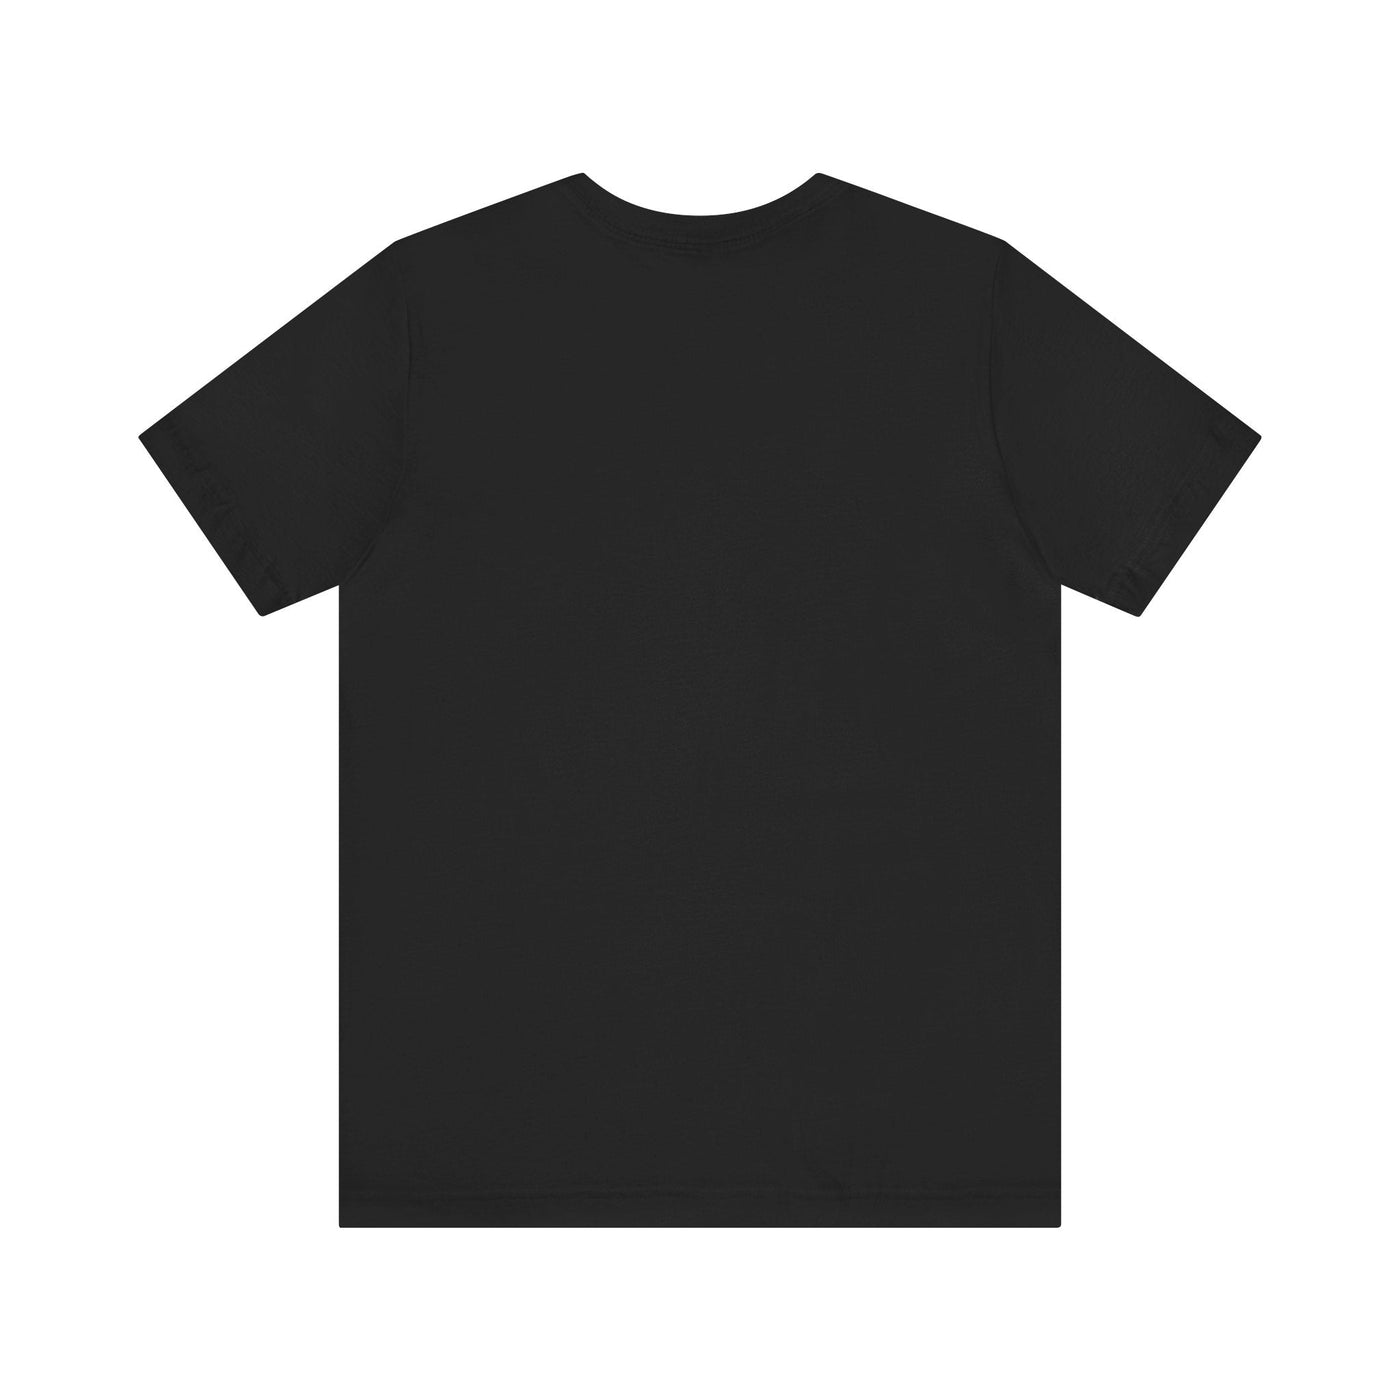 Beach Boy Sharky Unisex T-shirt